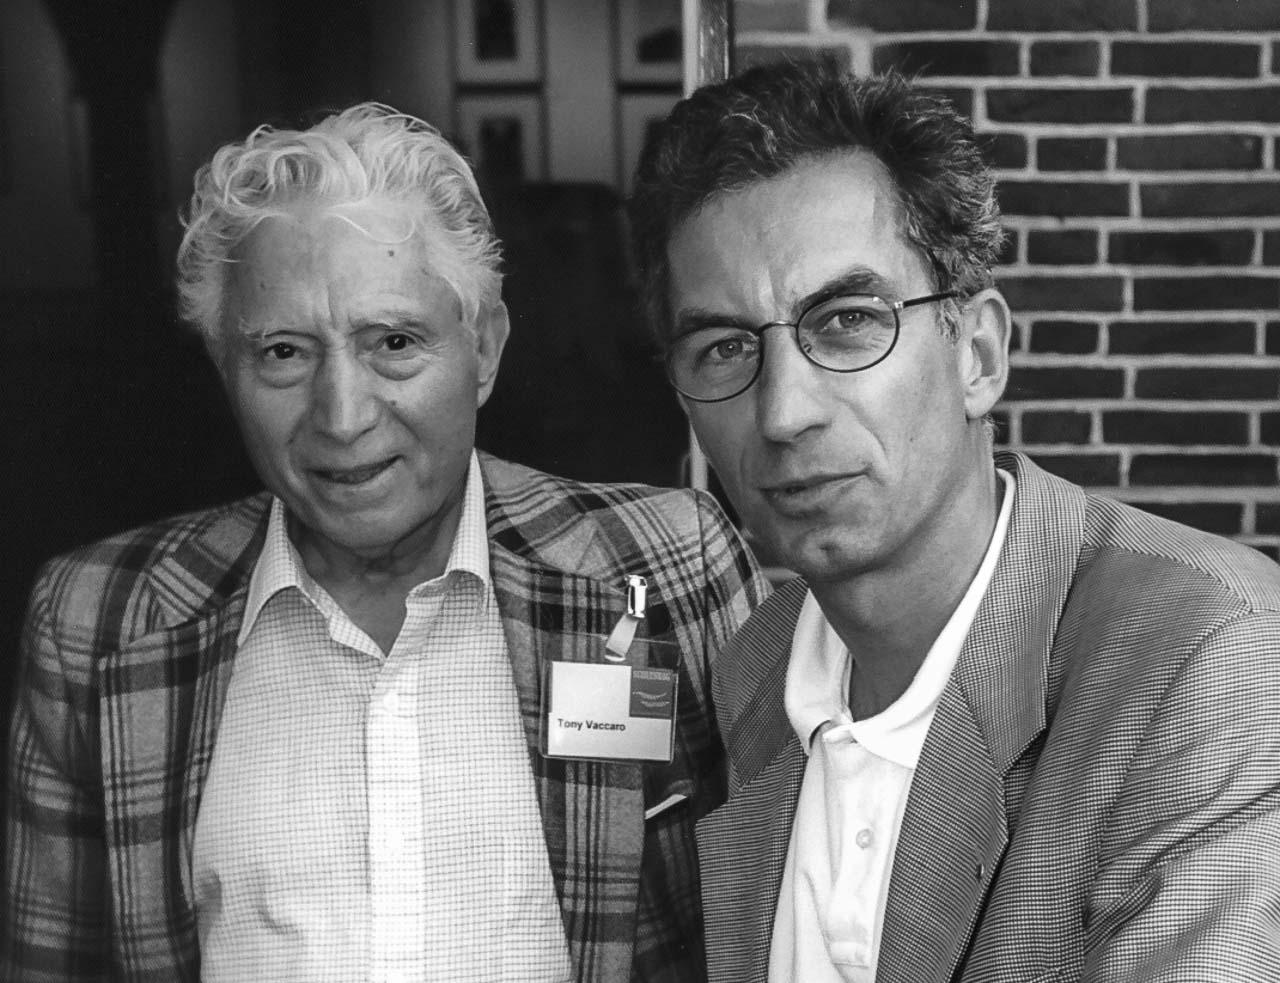 Eigens aus New York angereist: Tony Vaccaro (links) bei der Eröffnung seiner Ausstellung "Deutschland 1945-1949" im Stadtmuseum Schleswig am 11. Juli 1999, begleitet vom damaligen Museumsdirektor Holger Rüdel.